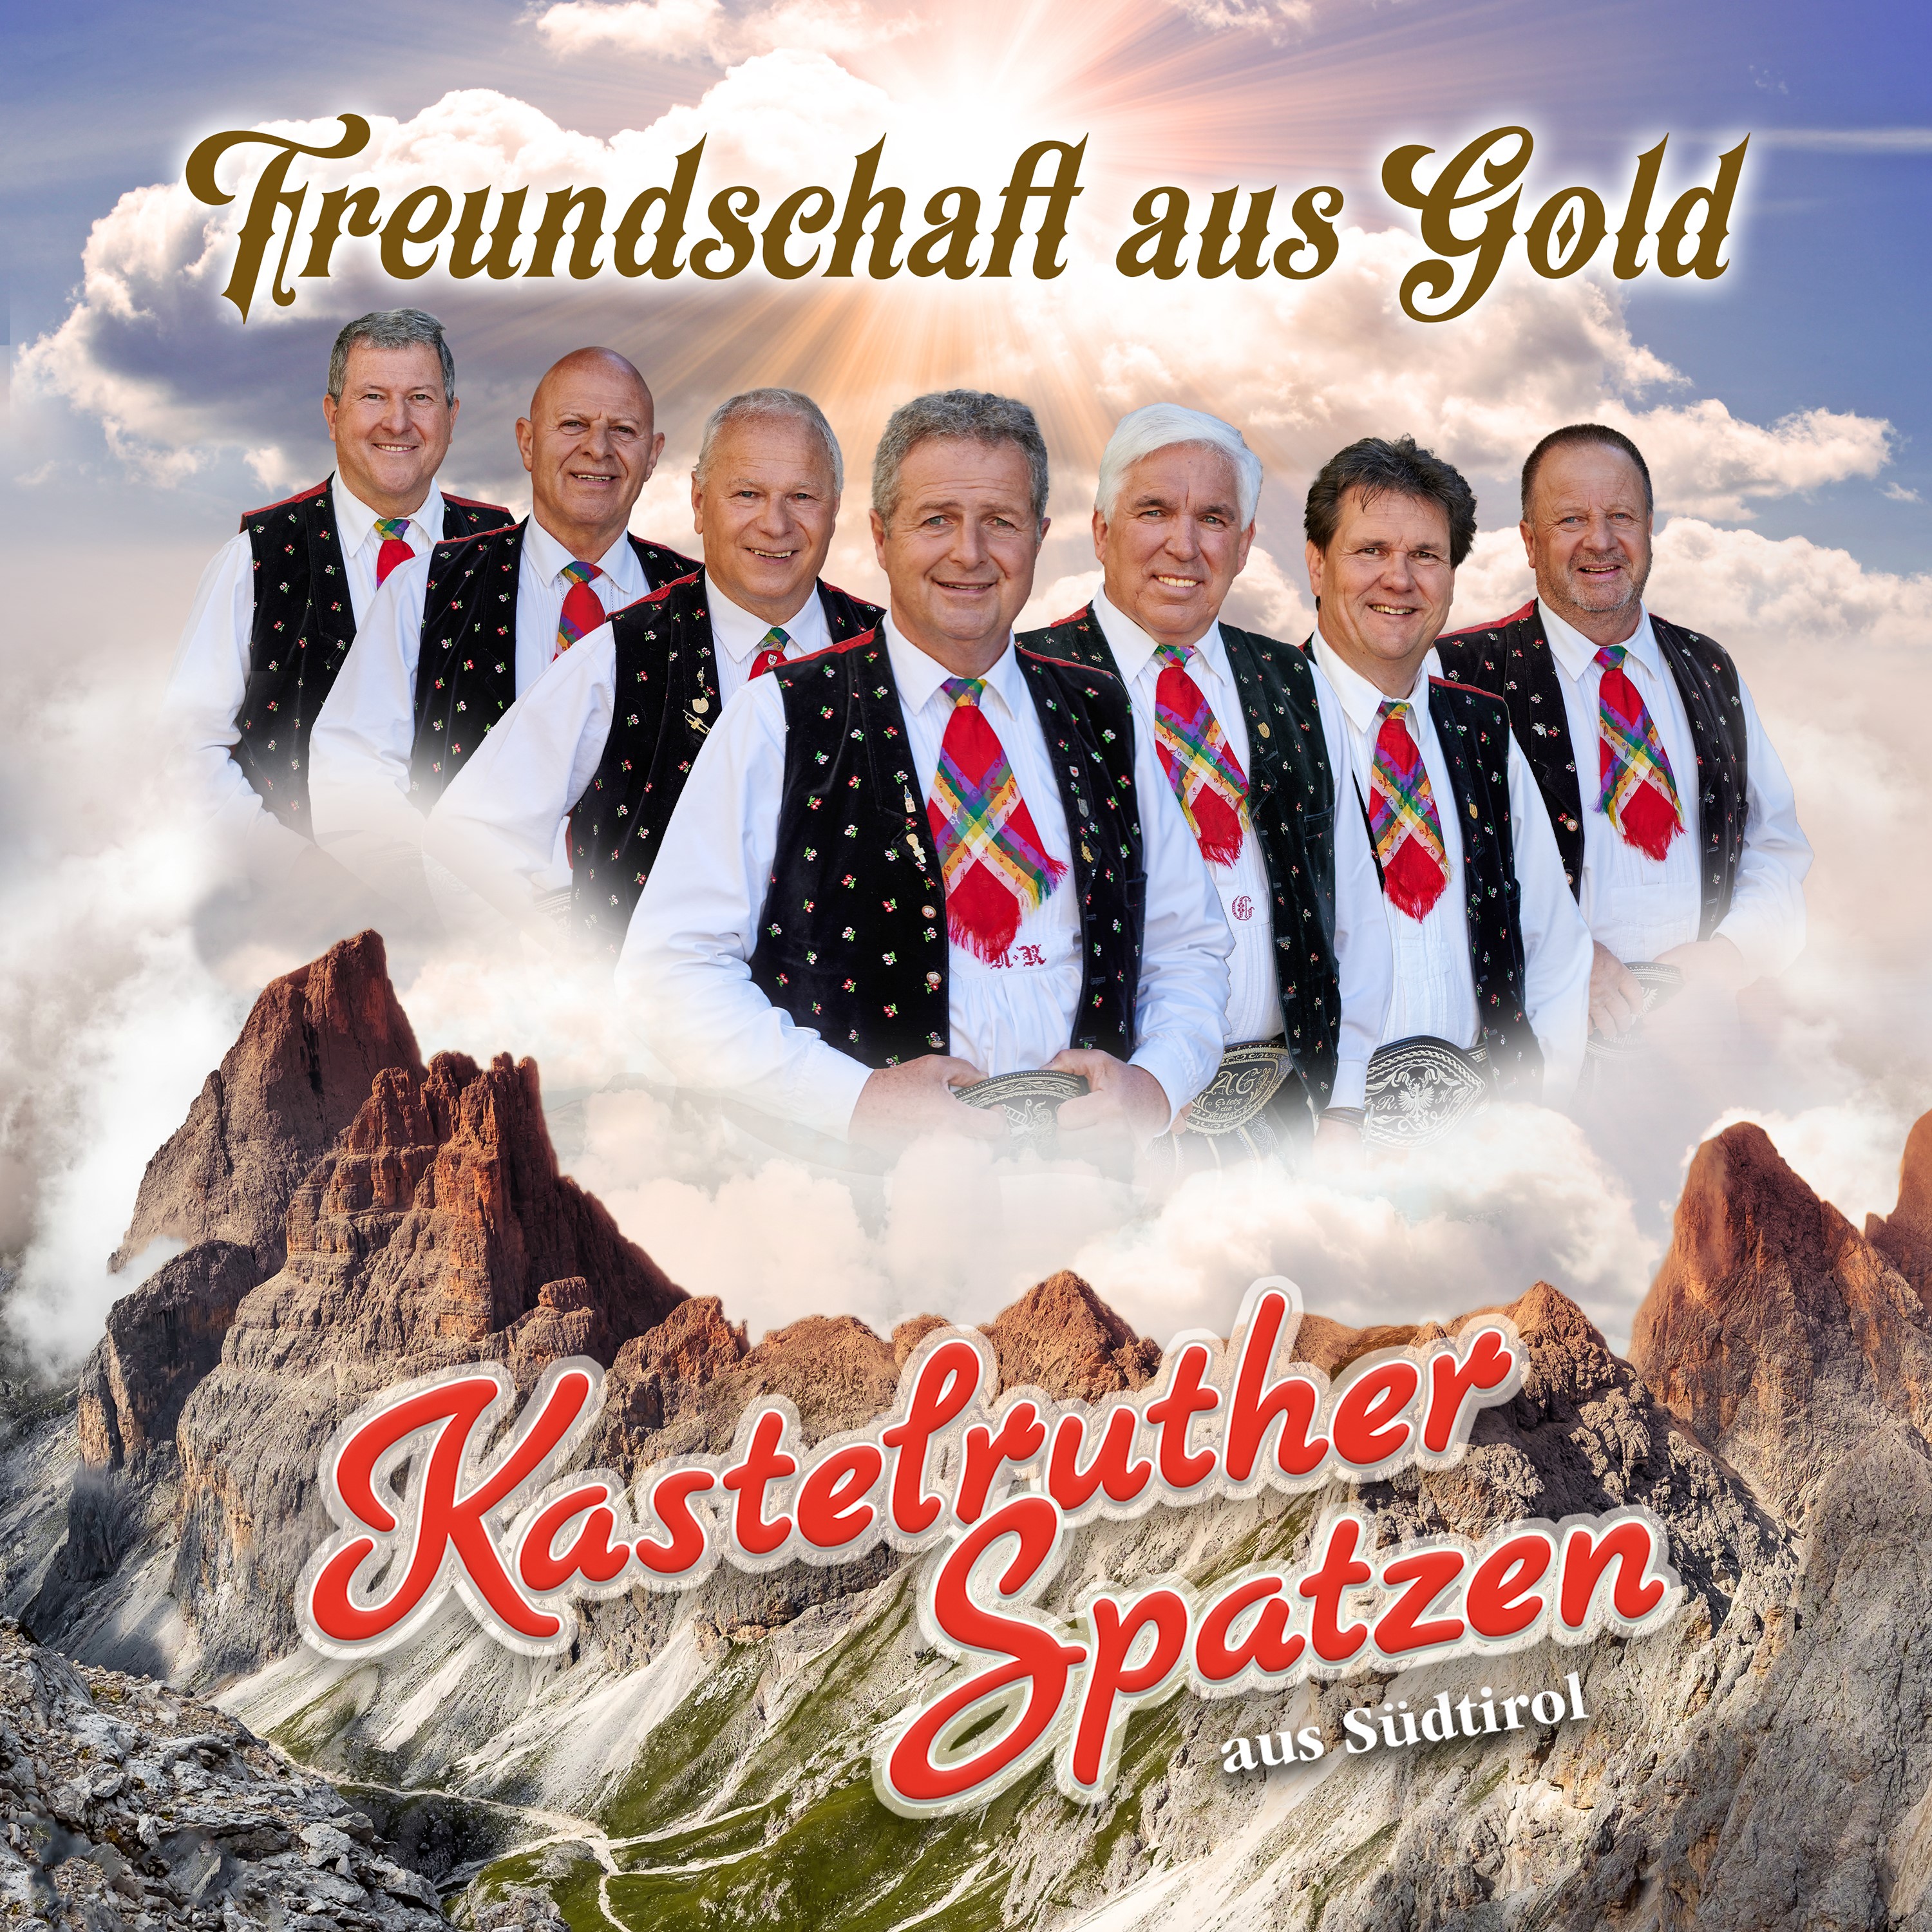 KASTELRUTHER SPATZEN * Freundschaft aus Gold (CD) * Auch als Limitierte Fan-Box erhältlich!